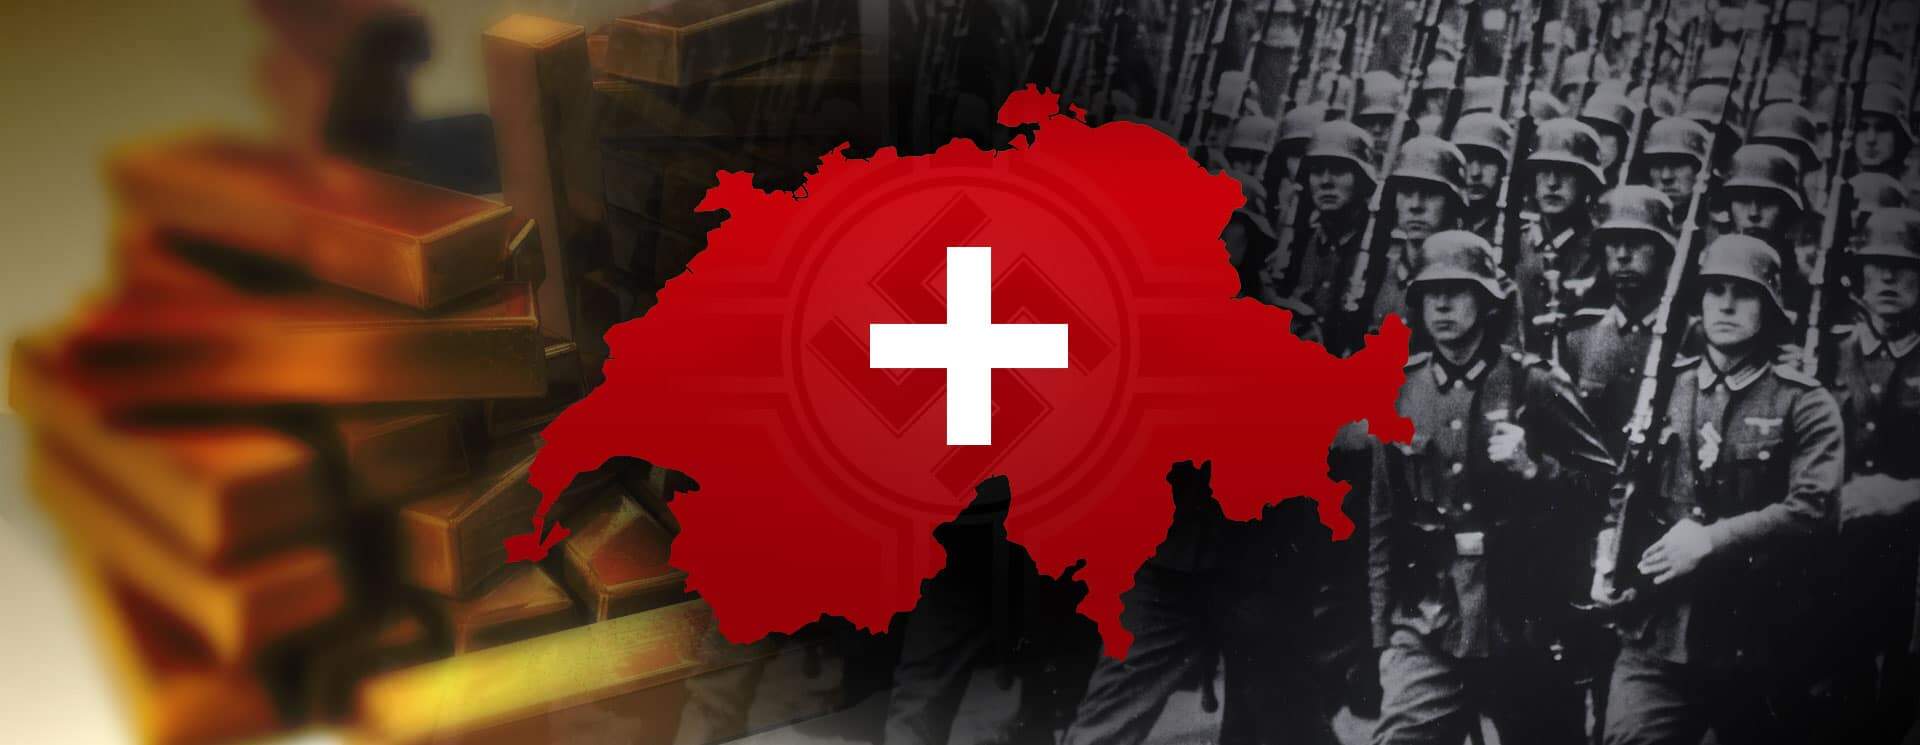 Suíça e a neutralidade na Segunda Guerra Mundial